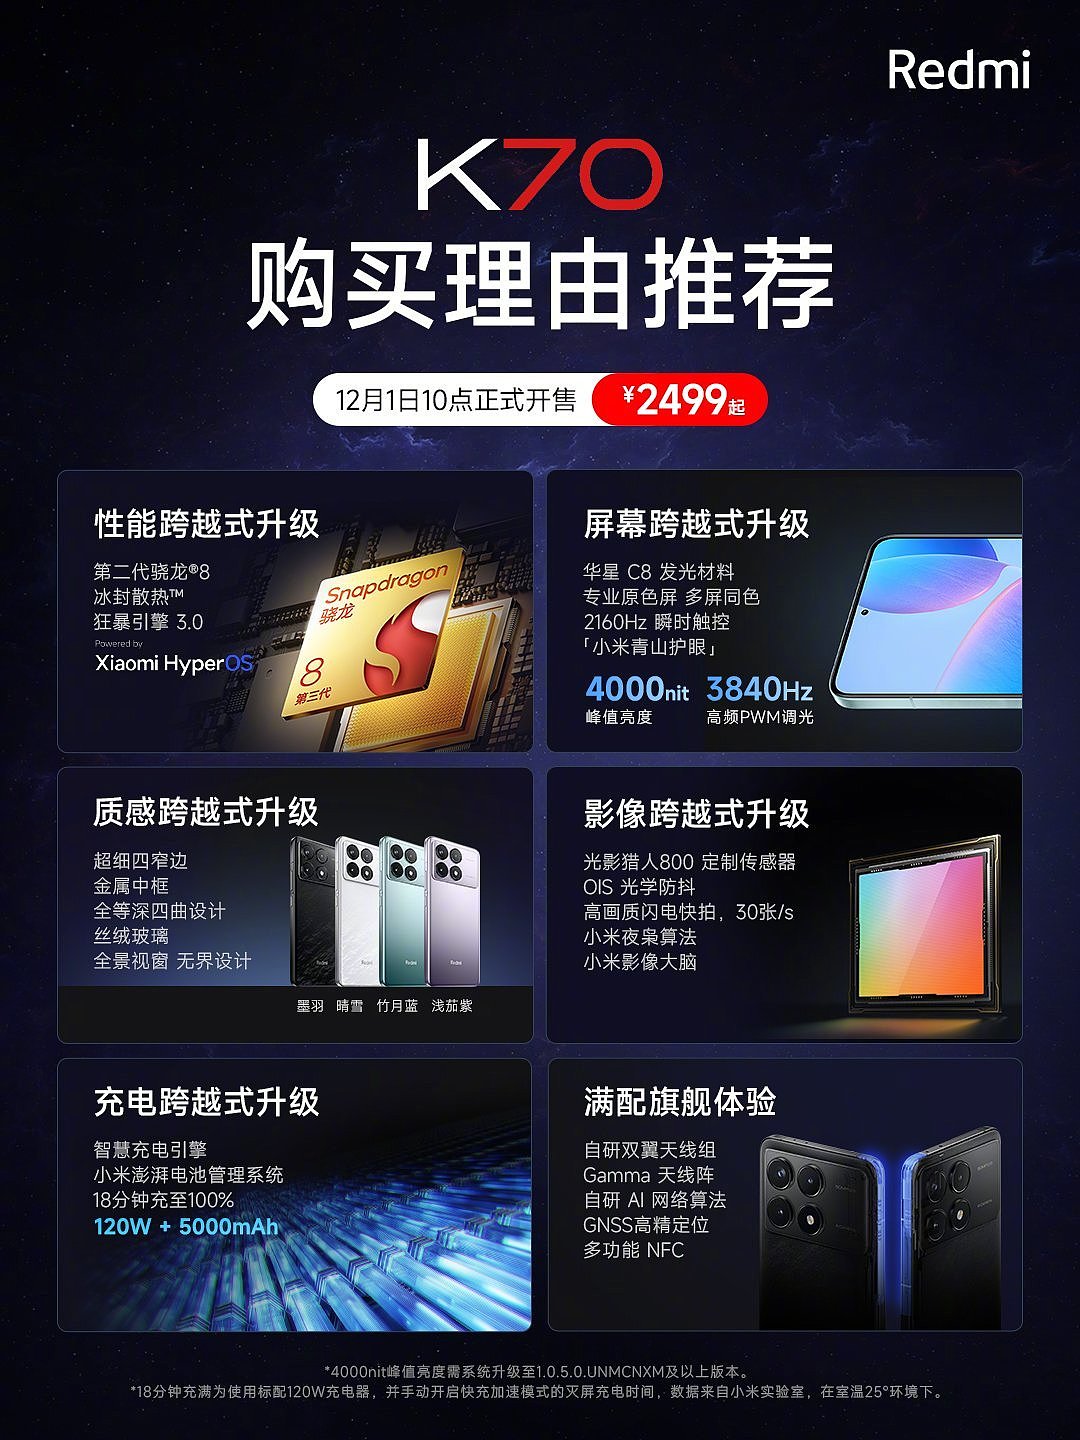 1999~4399 元，小米 Redmi K70 系列手机今日开售 - 1